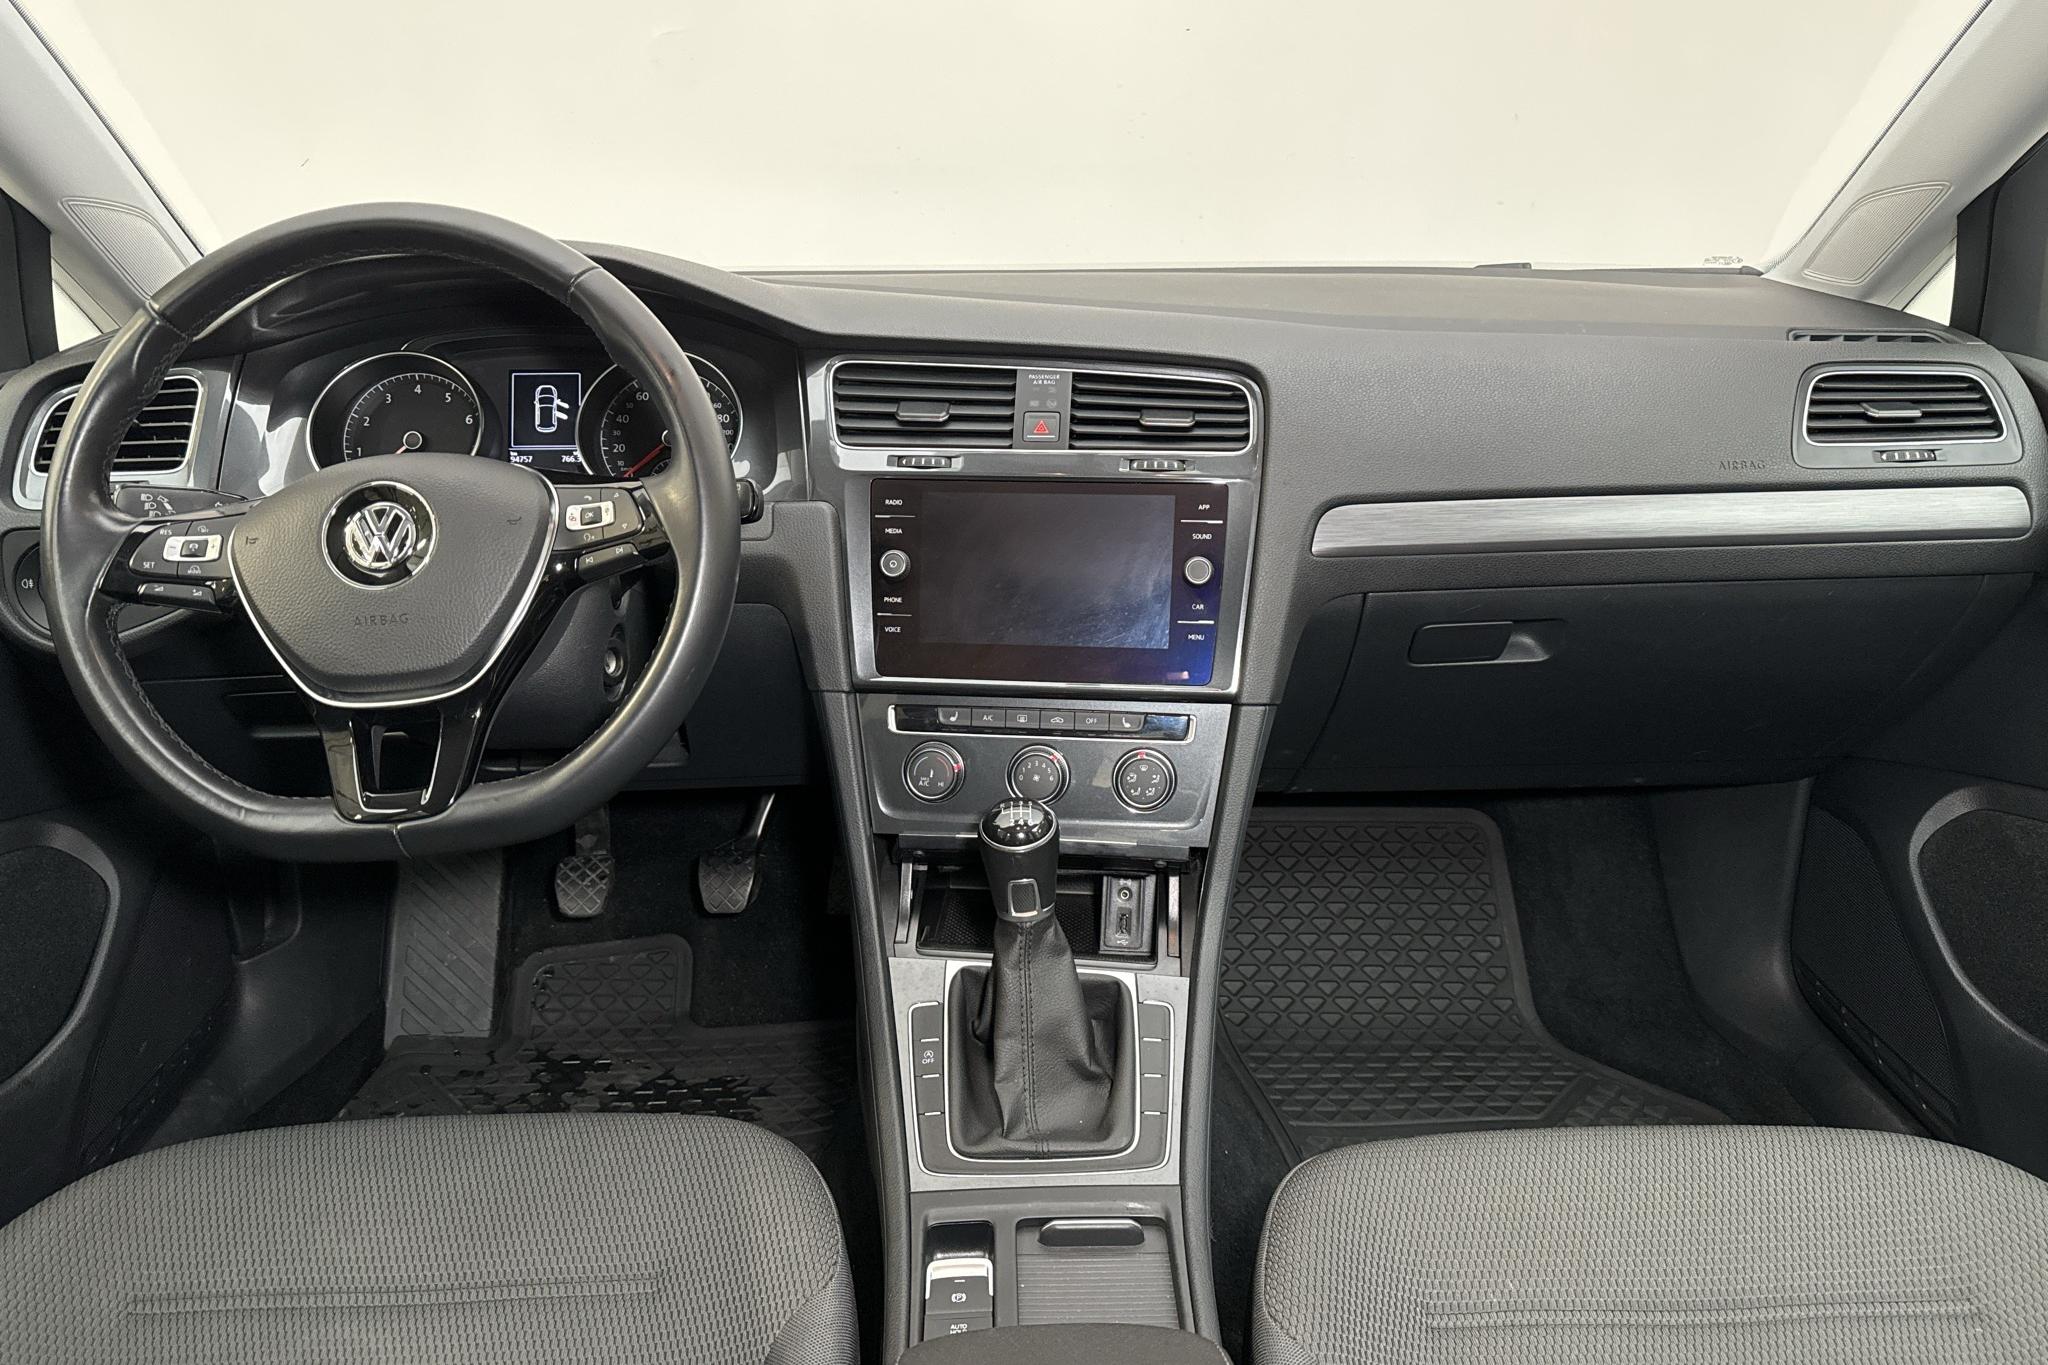 VW Golf VII 1.0 TSI 5dr (110hk) - 94 750 km - Manual - white - 2018